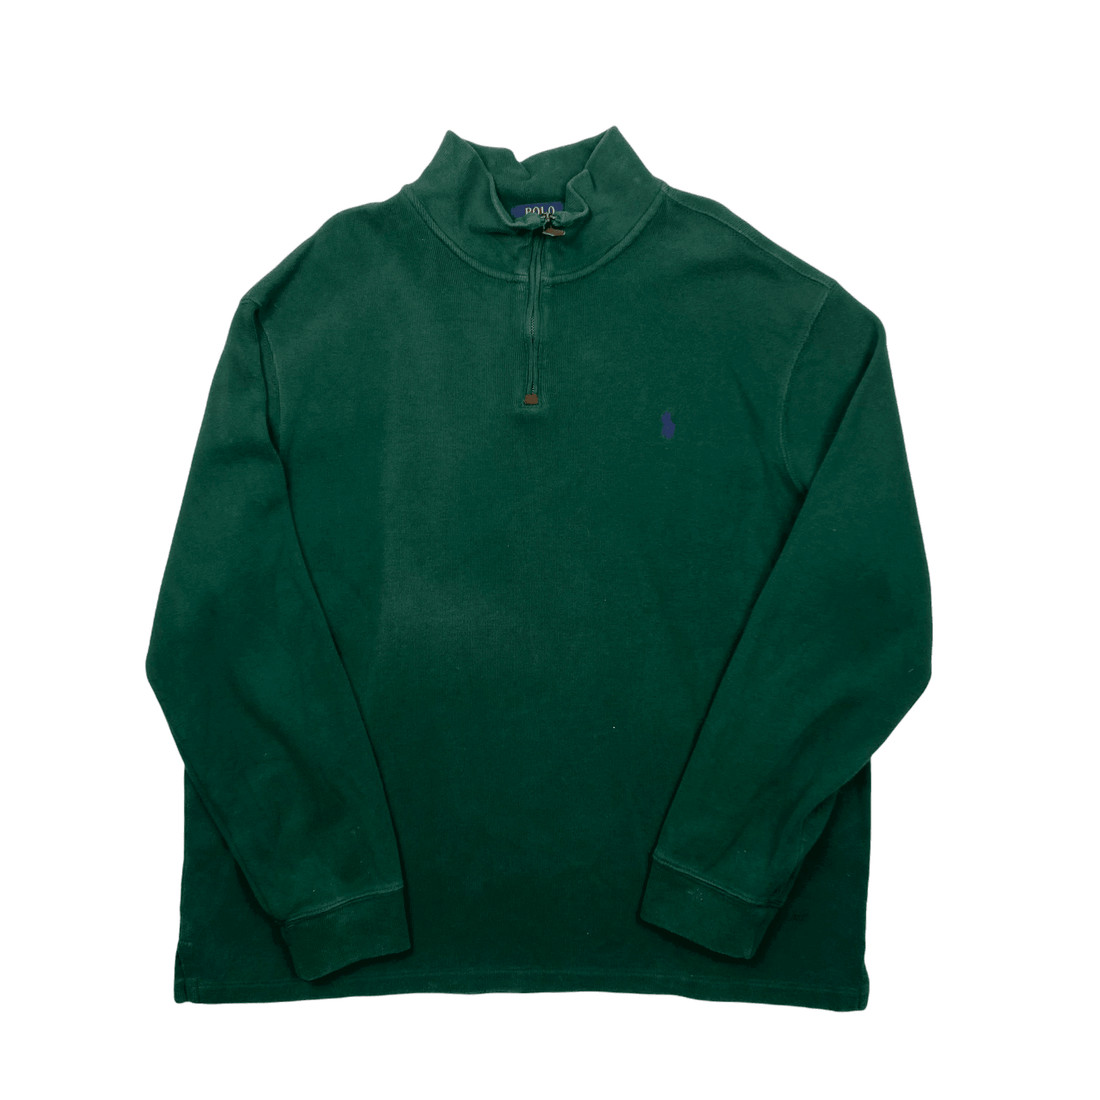 Vintage 90s Green Polo Ralph Lauren Quarter Zip Sweatshirt - Extra Large - The Streetwear Studio